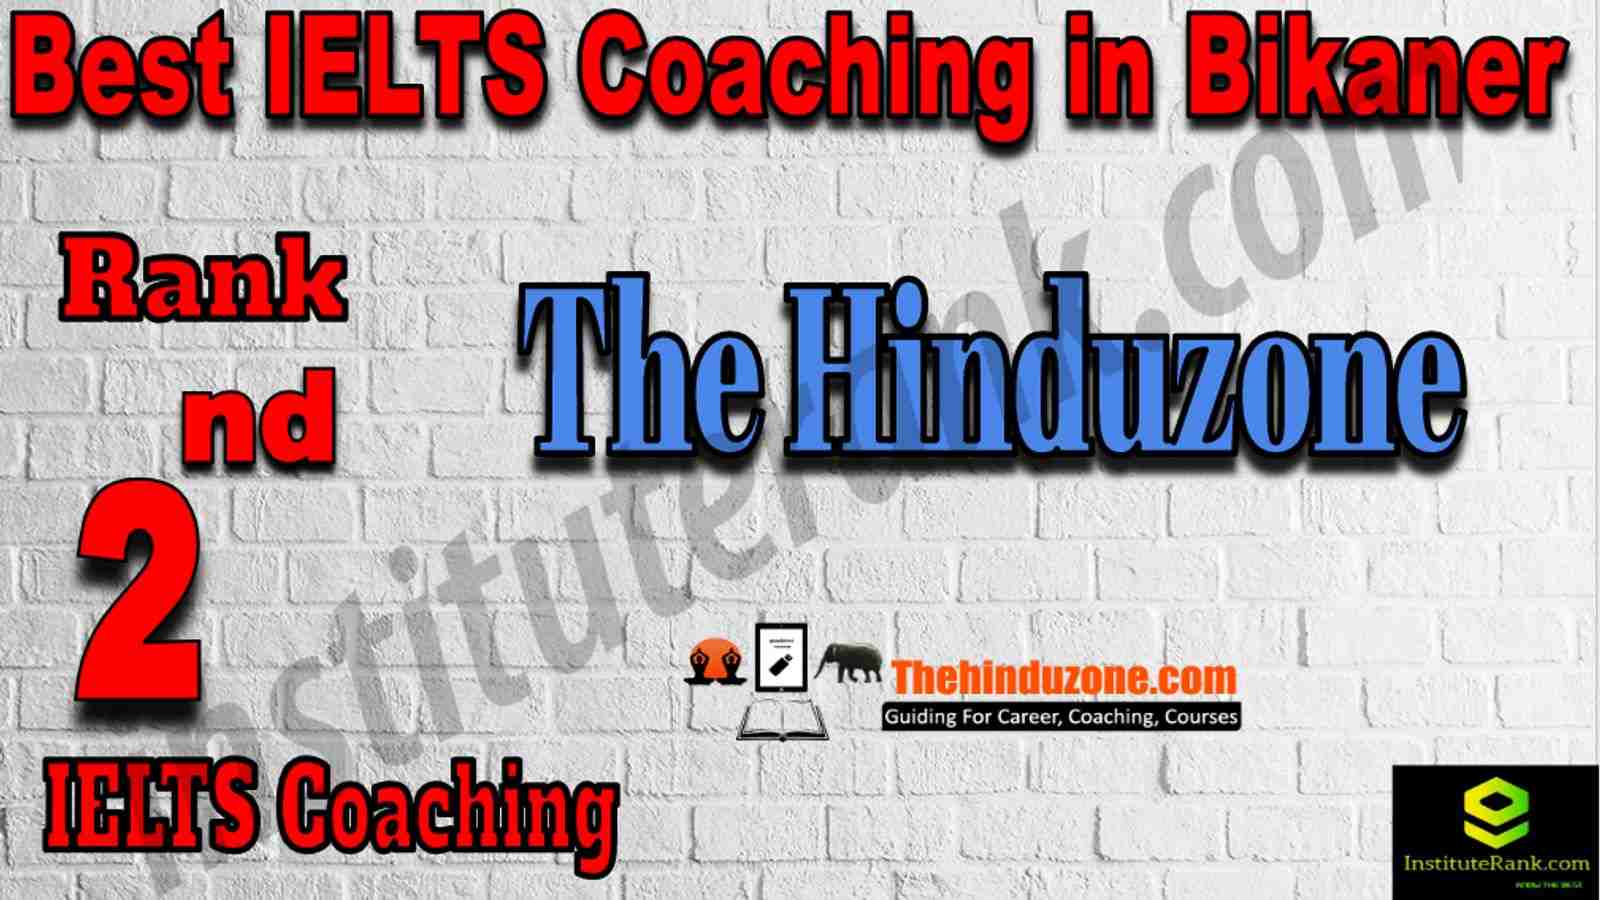 2nd Best IELTS Coaching in Bikaner